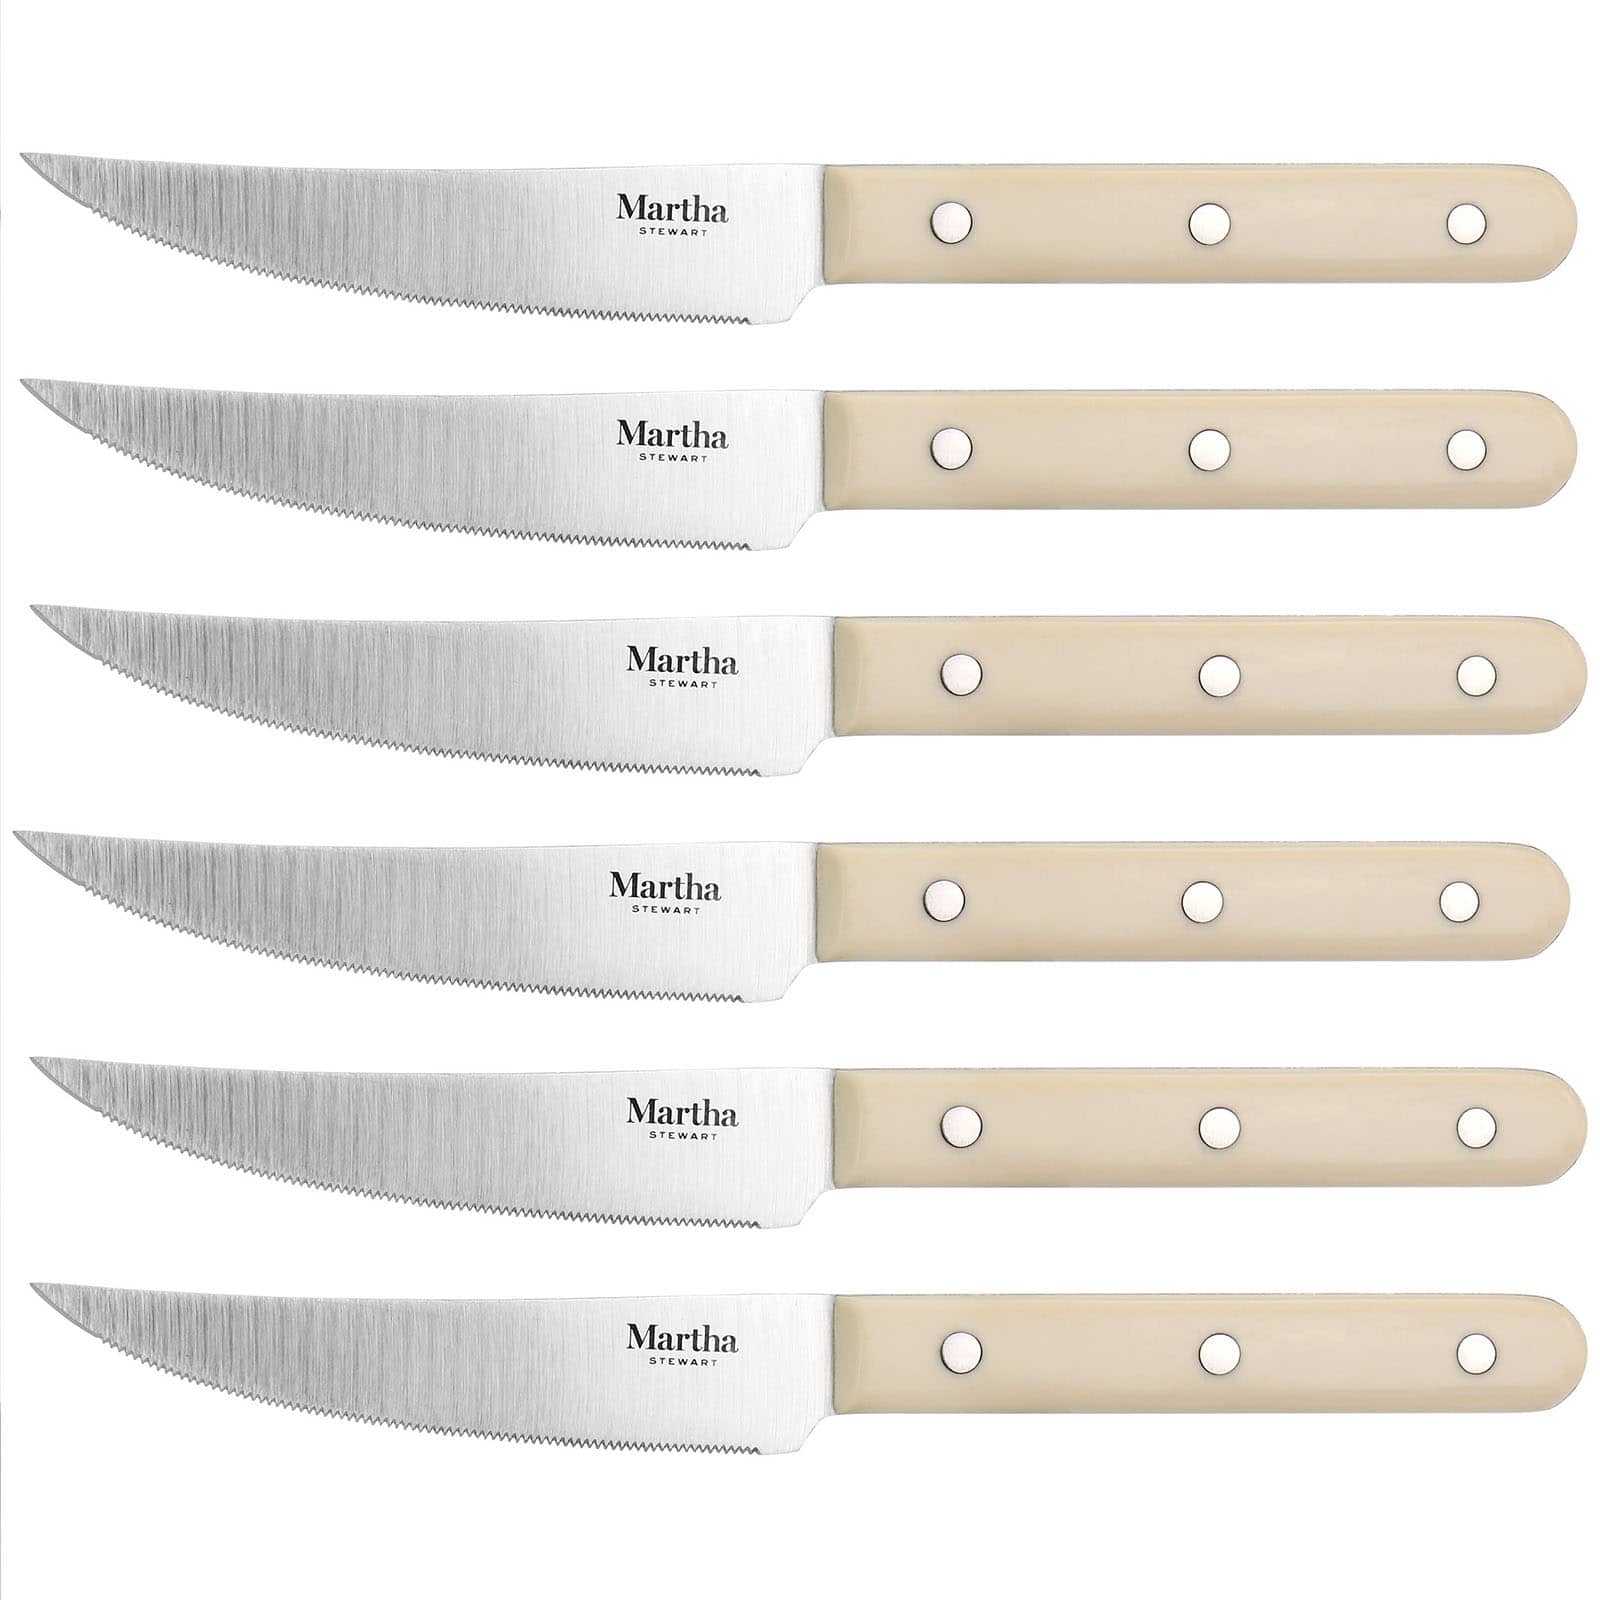 Martha Stewart Cream Stainless Steel 14 Piece Cutlery & Knife Block Set